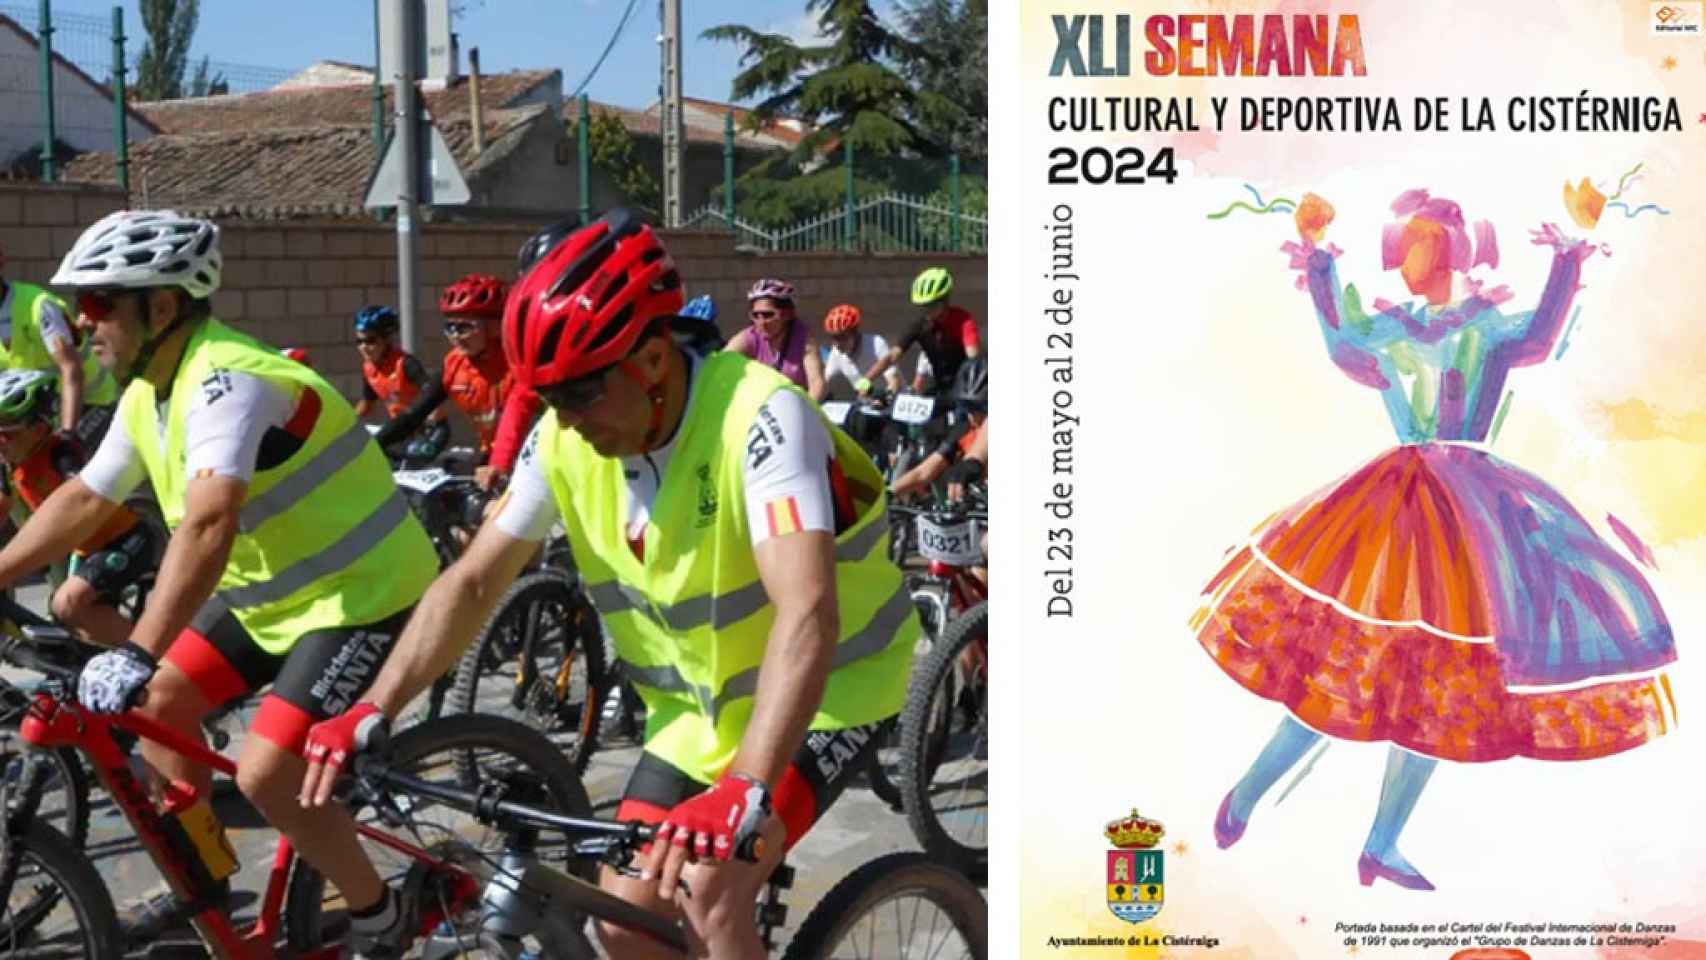 Una imagen del Día de la Bici y el Cartel de La Semana Cultural y Deportiva de La Cistérniga